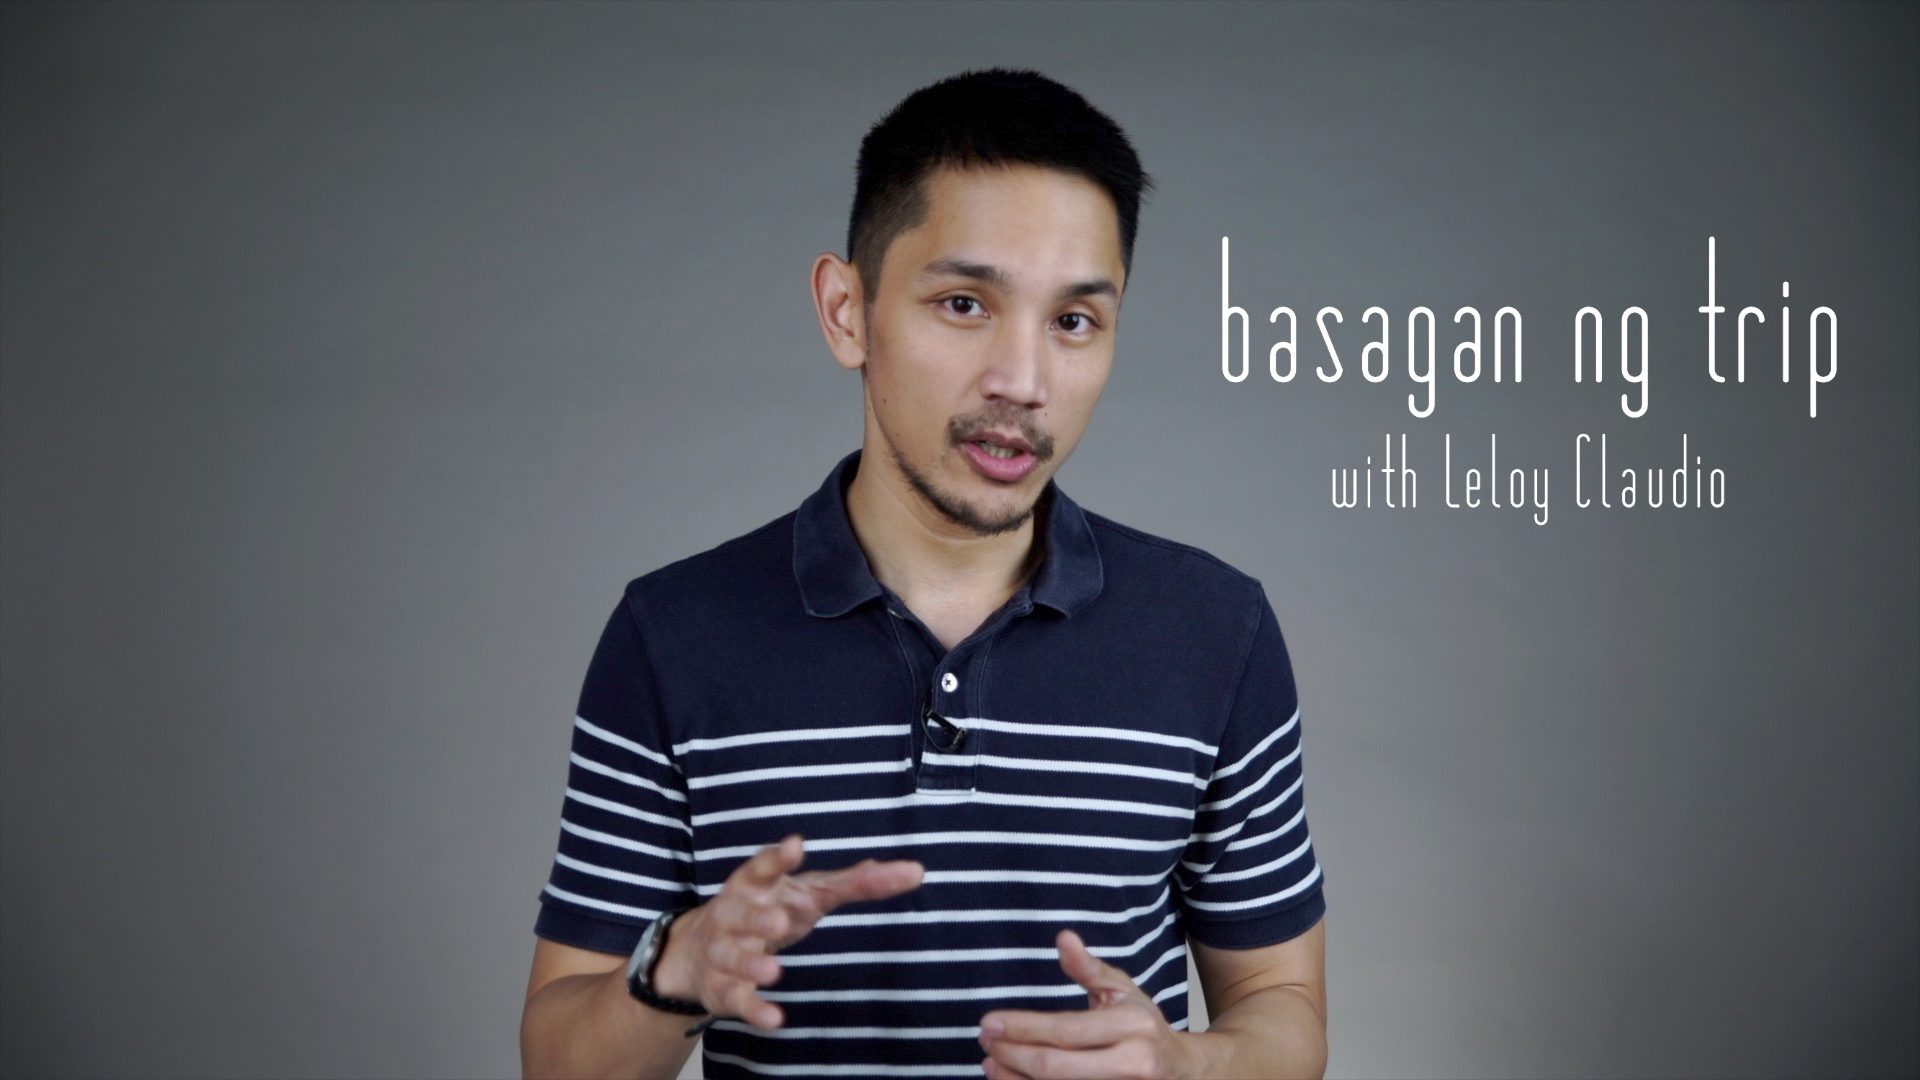 Basagan ng Trip with Leloy Claudio: 5 ways to make reading news less stressful